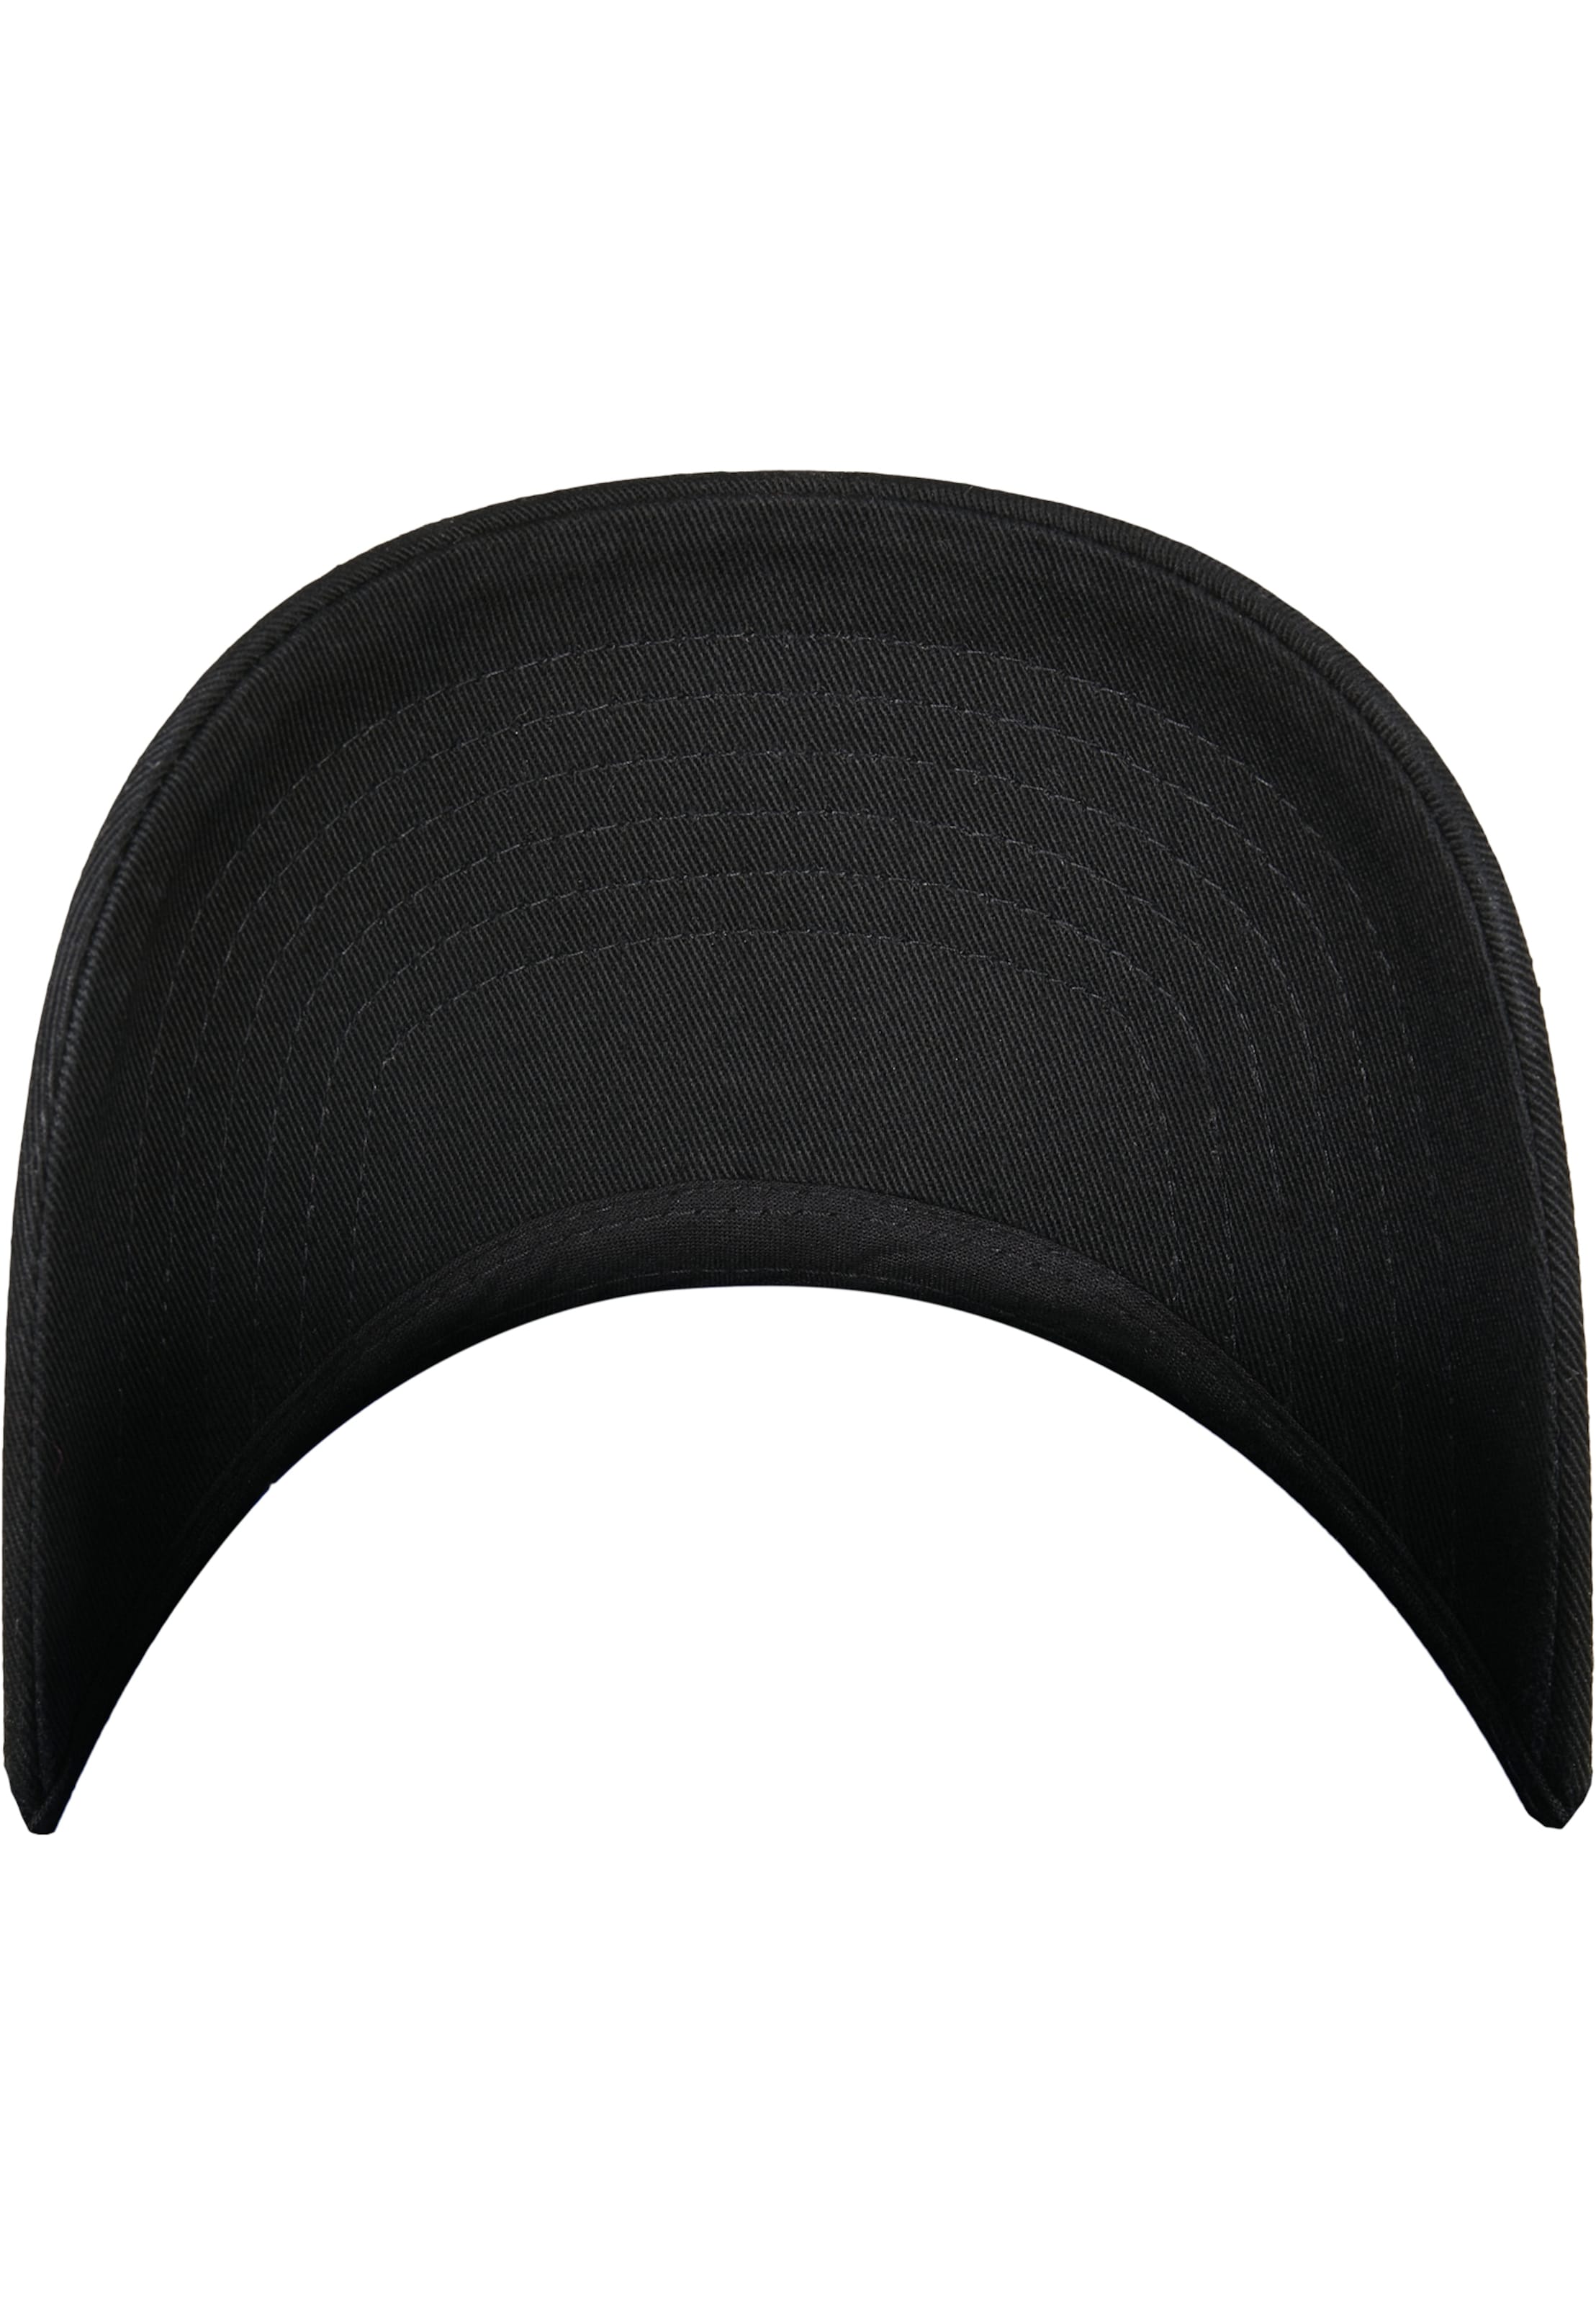 Casquettes et bonnets Casquette Flexfit en Noir 